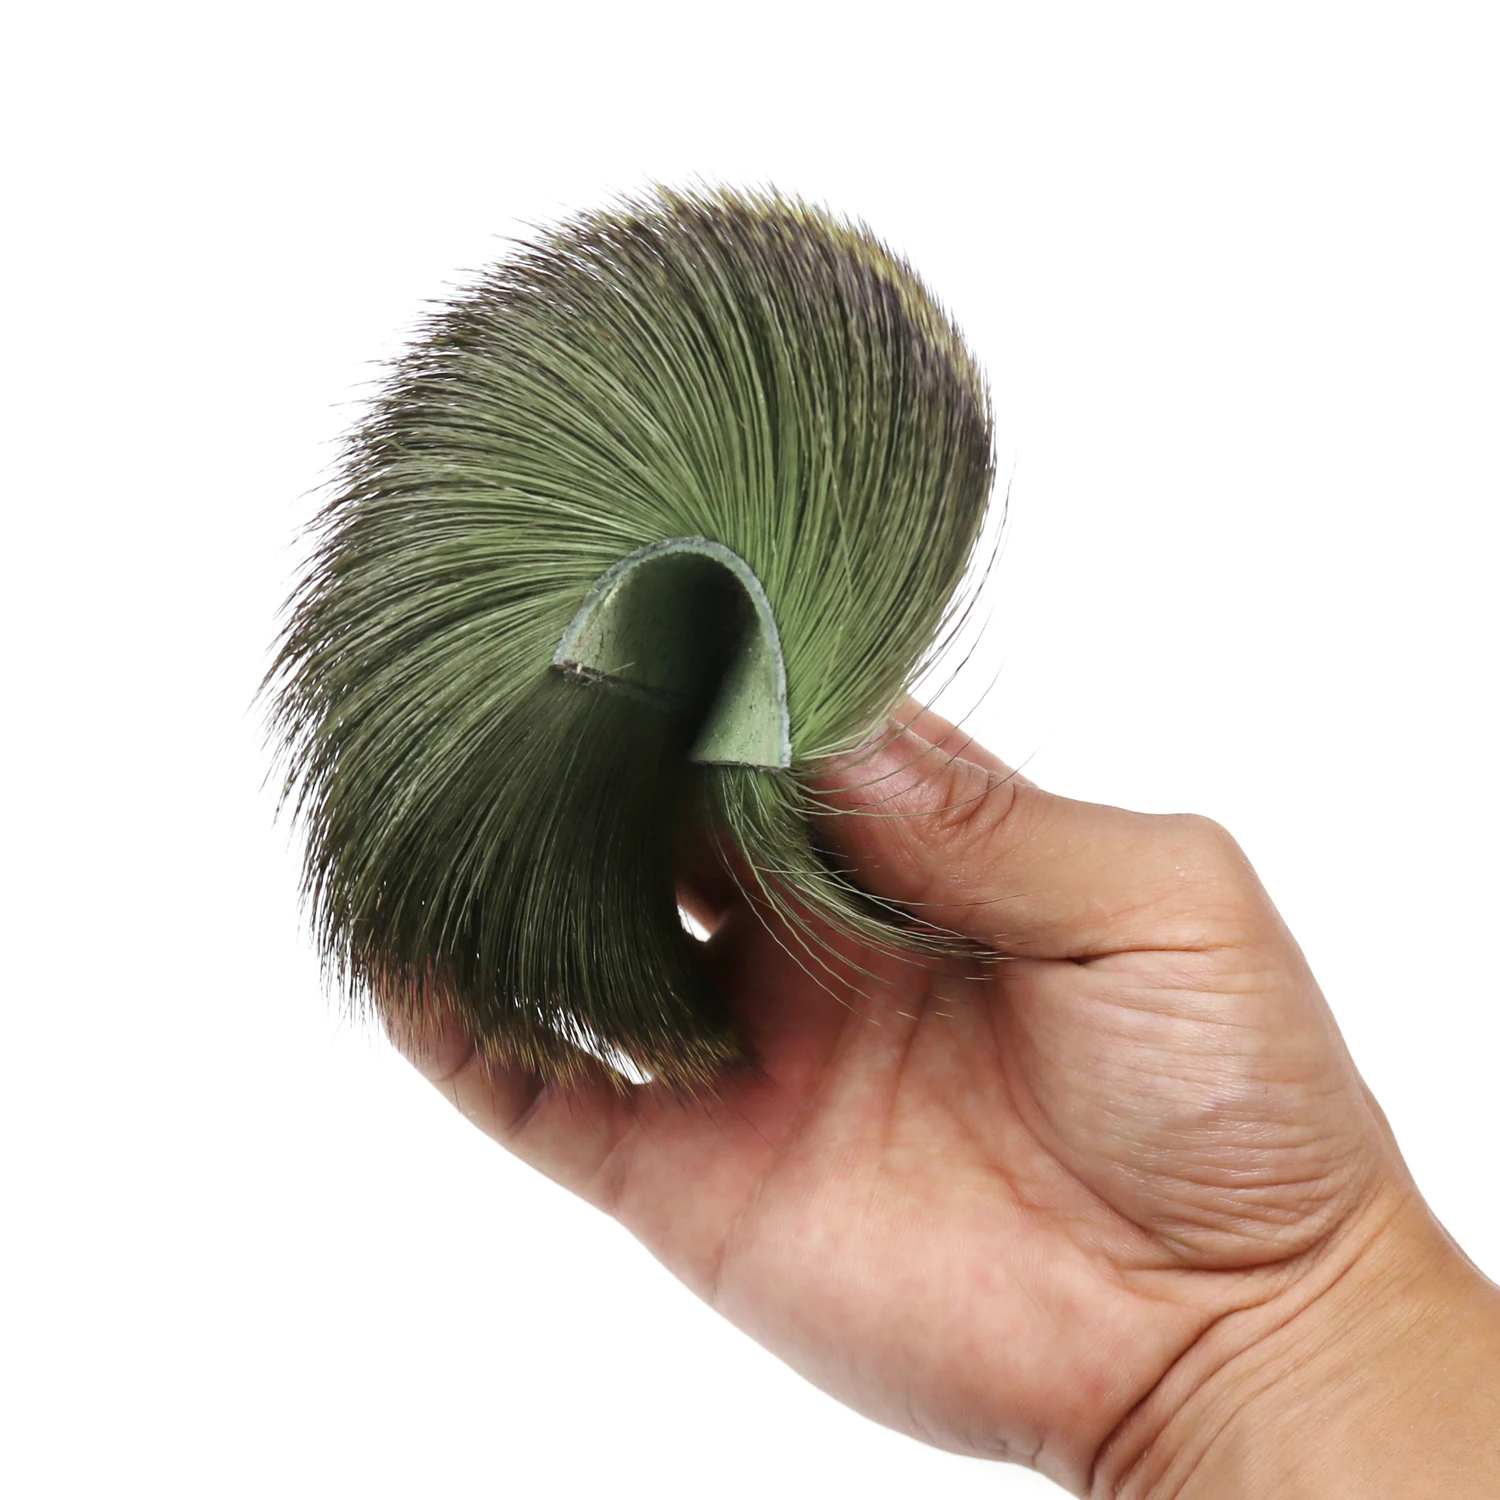 ICERIO 5 шт. натуральные волосы оленя для завязывания мух Сухих Мух Хоппер Caddis крылья и тела спиннинг басов жуков делая материал